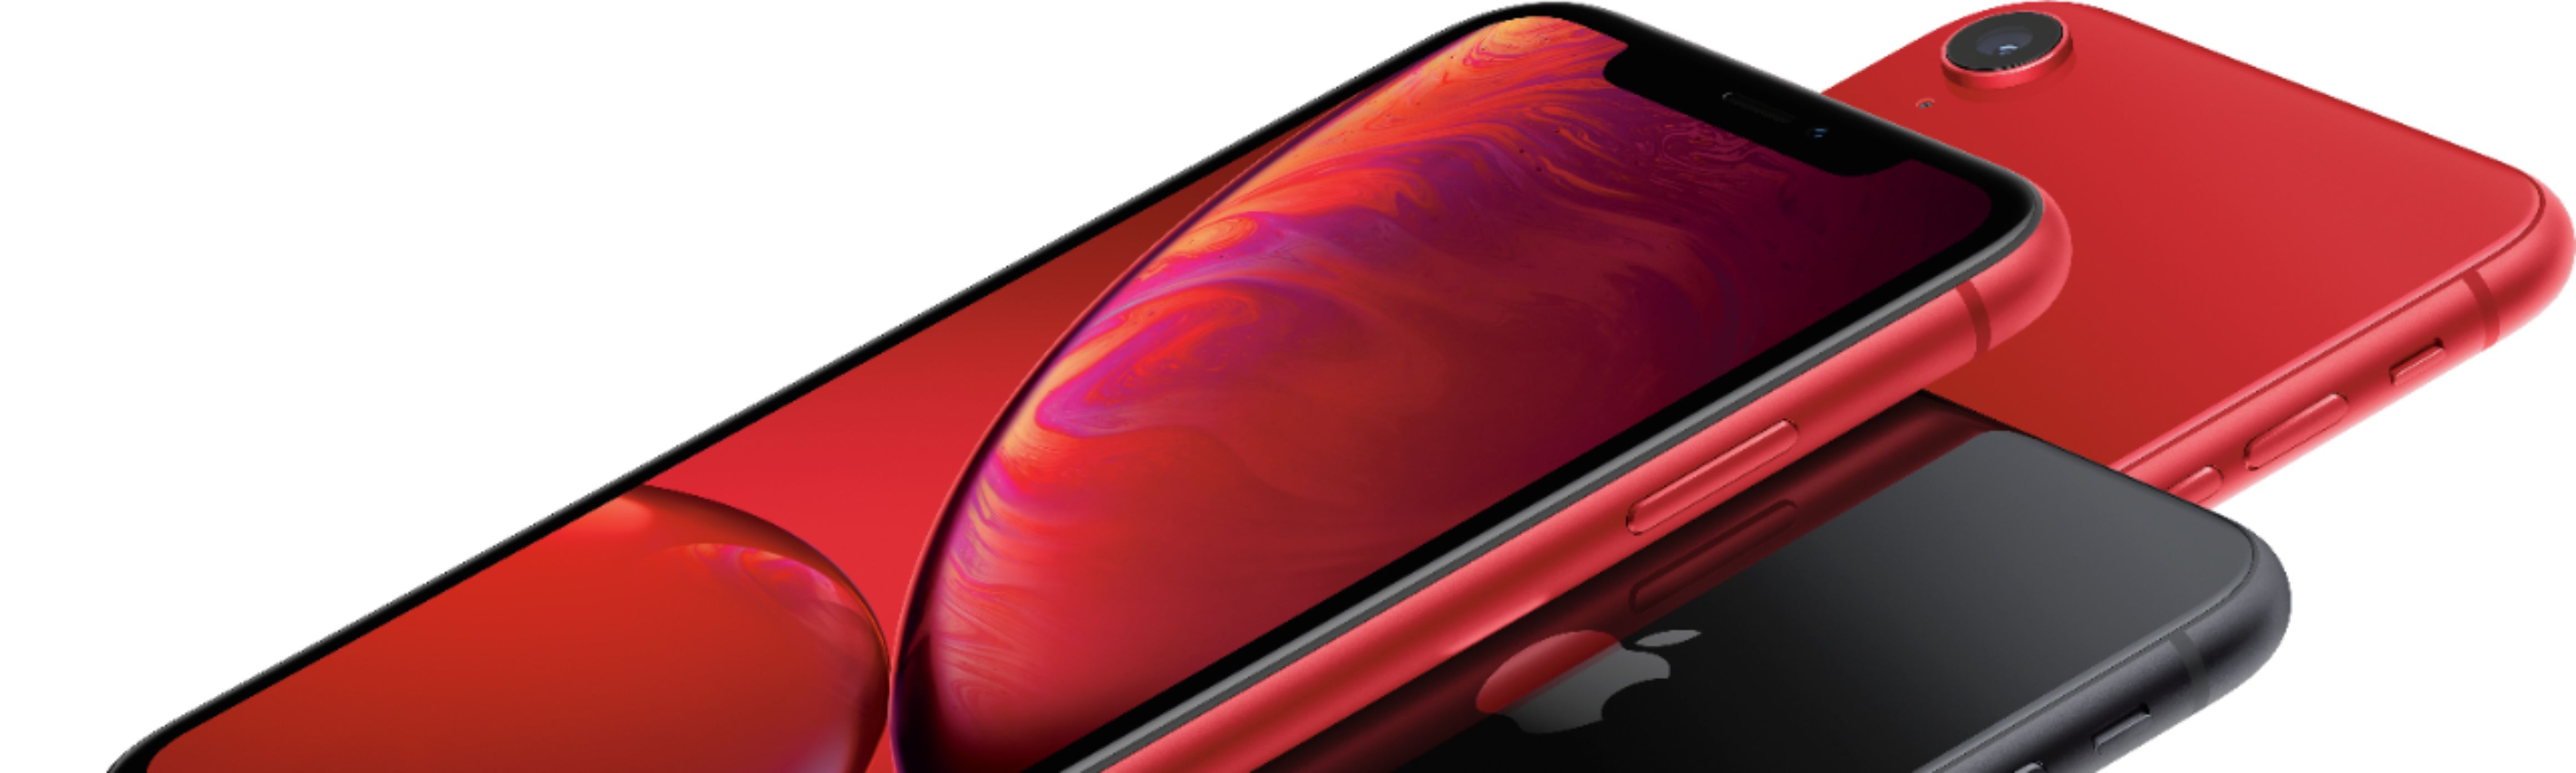 特価: iPhone XR red 128 GB Softbank スマートフォン本体